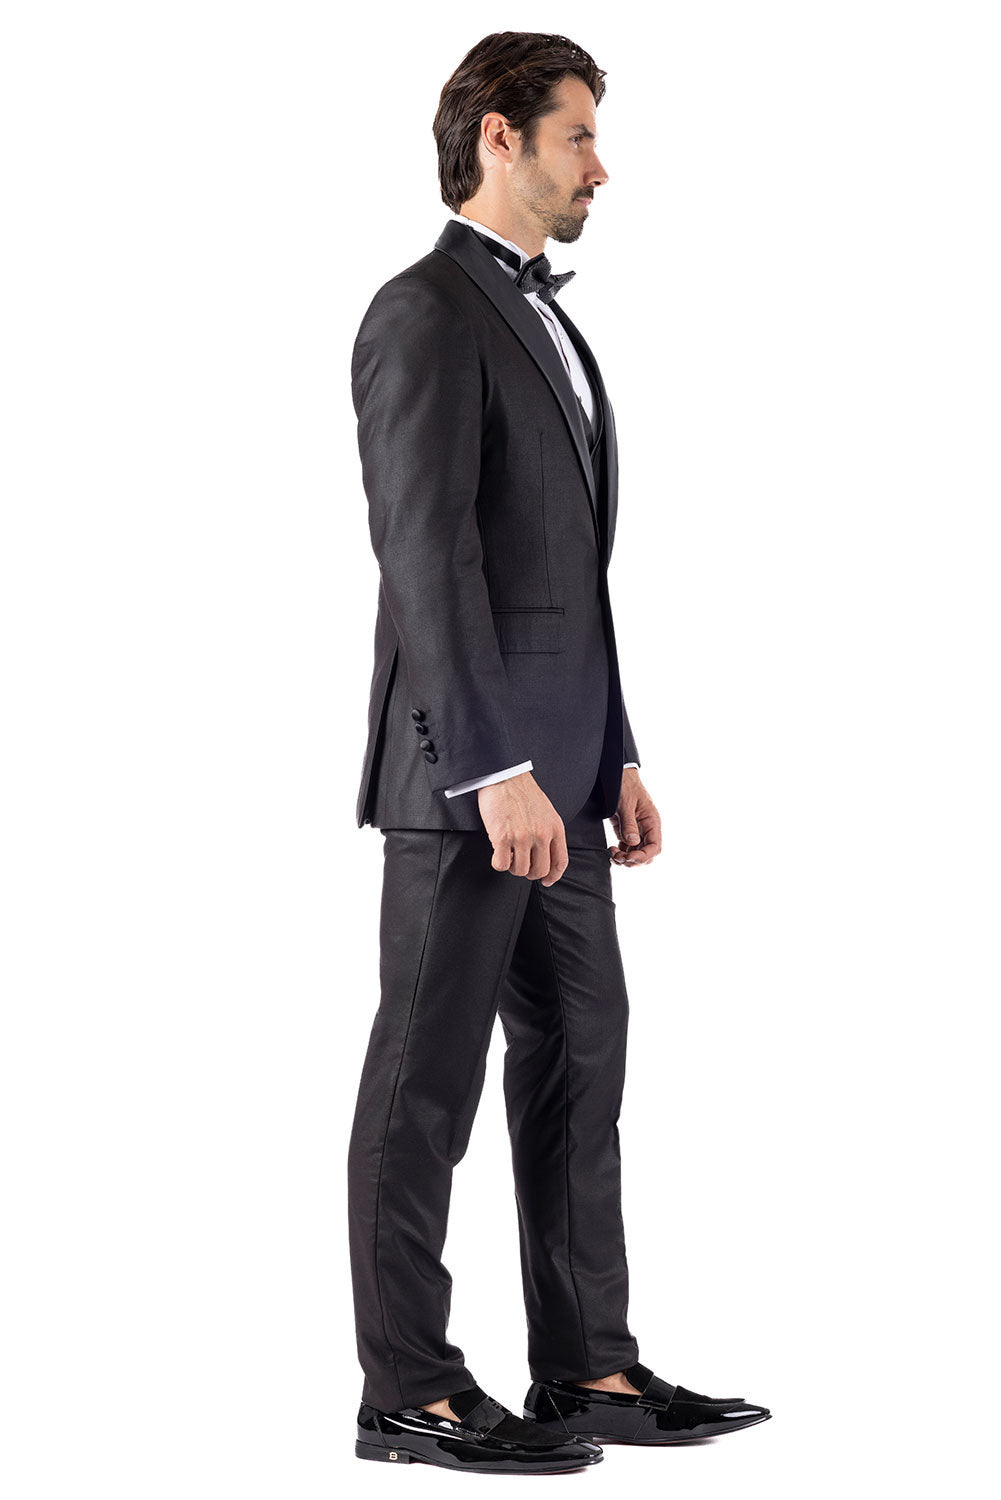 BARABAS Men's Solid Color Shawl Lapel Suit Vest Set 4TU04 Black